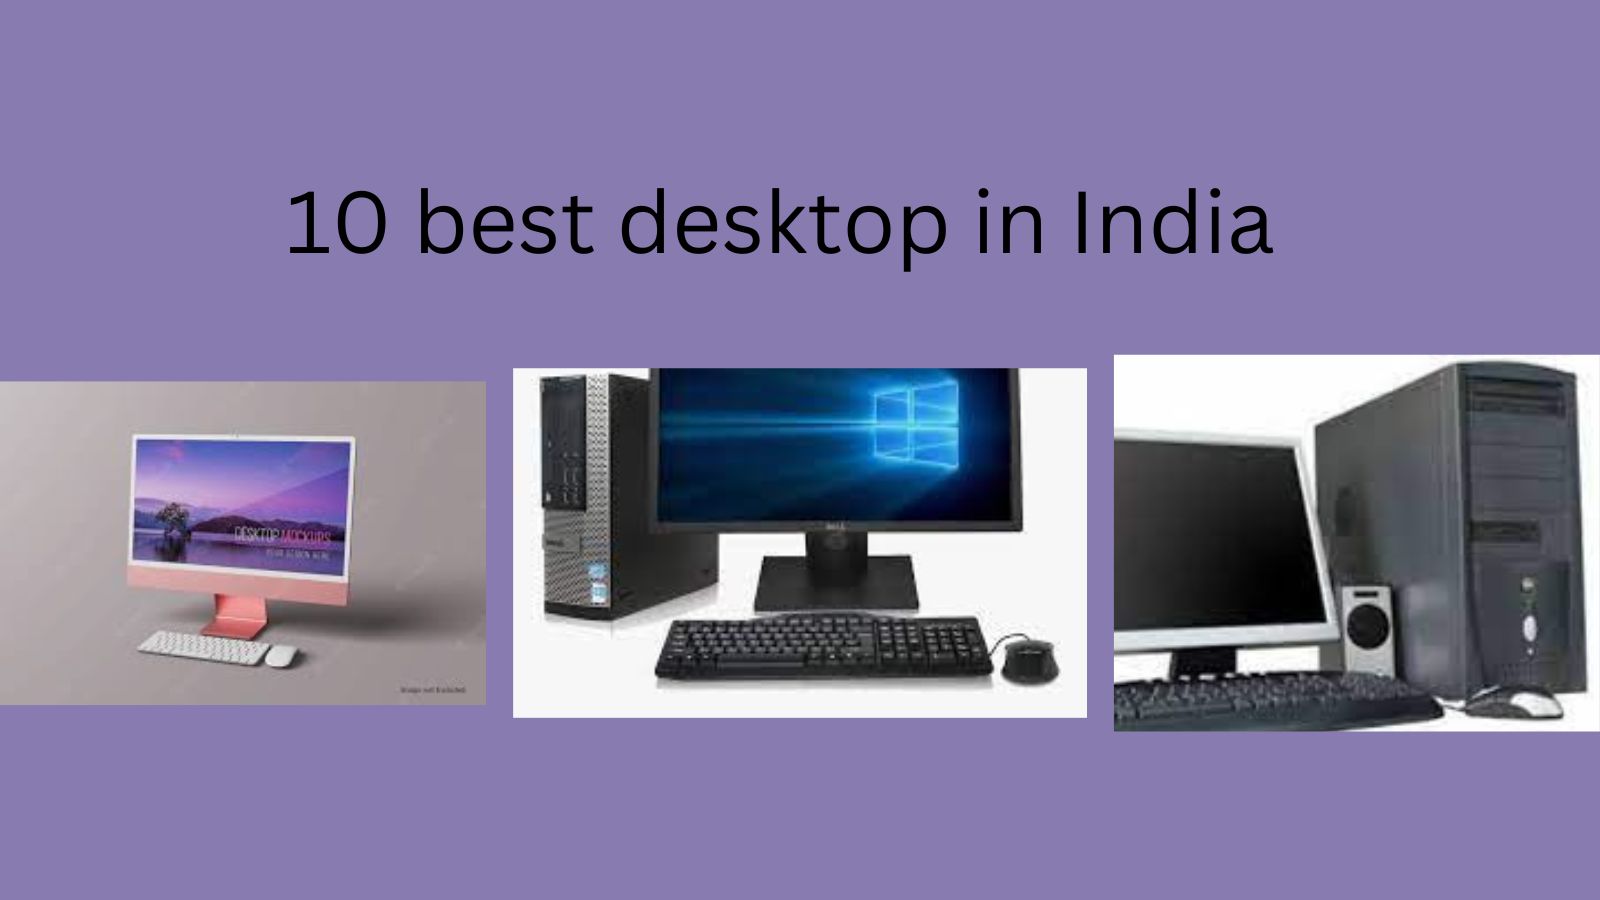 10 best desktop